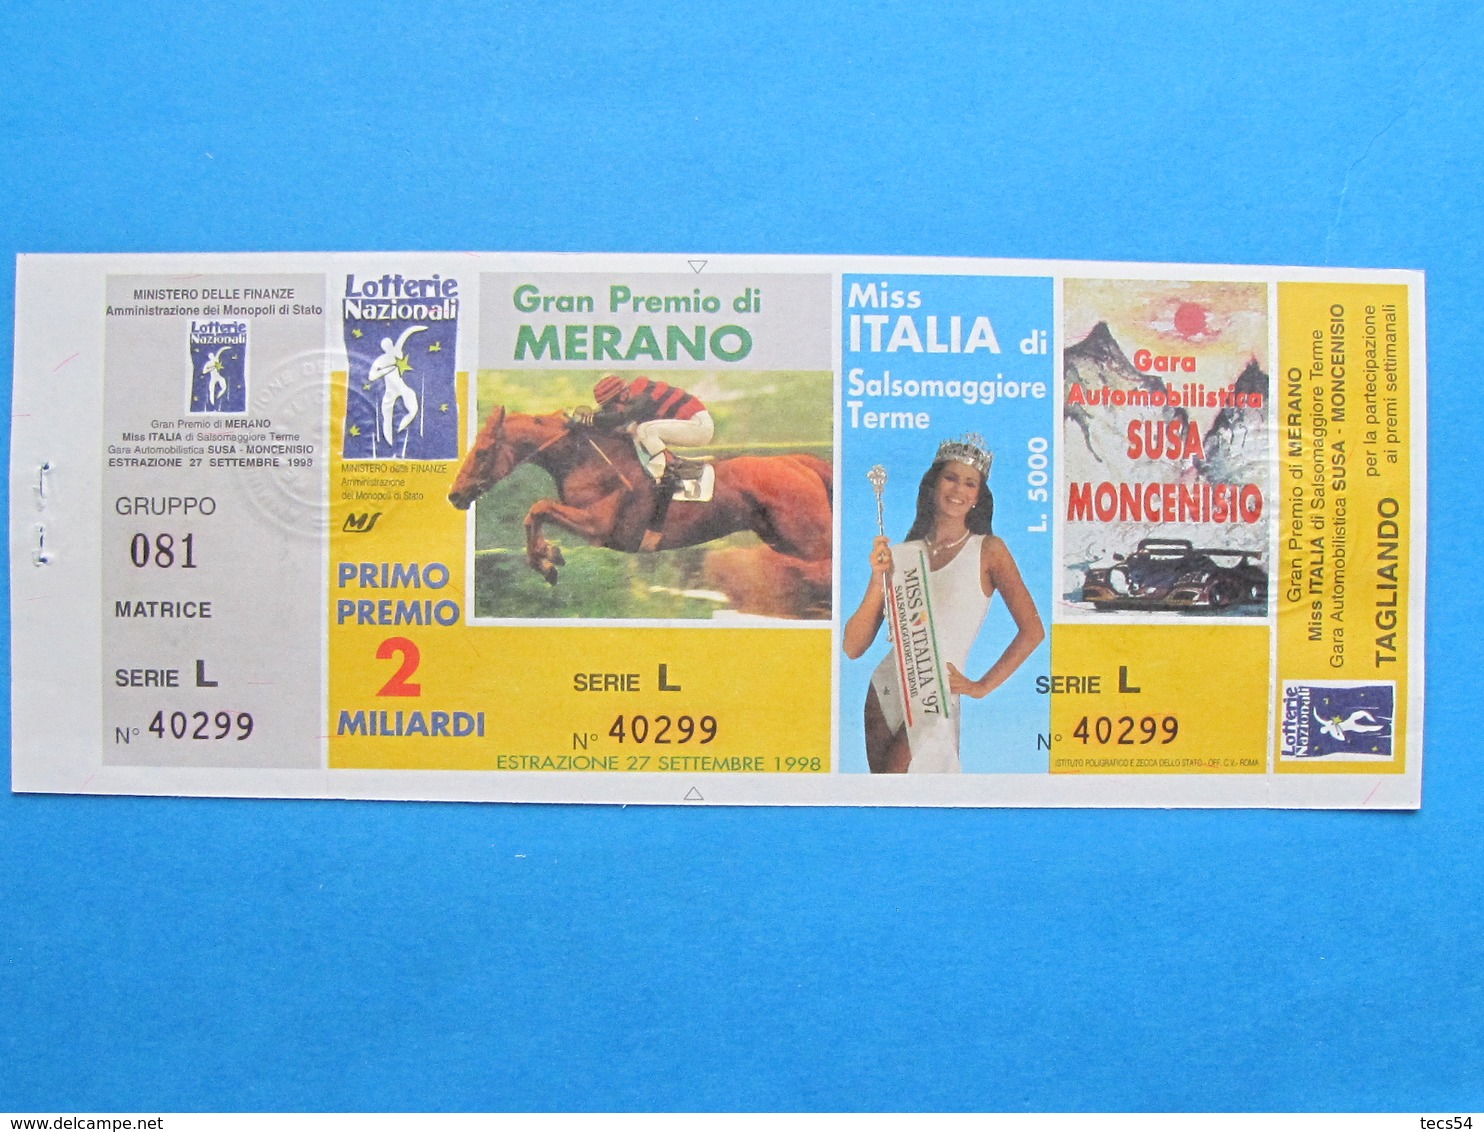 BIGLIETTO LOTTERIA MERANO MISS ITALIA SUSA MONCENISIO 1998 - COMPLETO DI MATRICE E TAGLIANDO FDS - Lottery Tickets